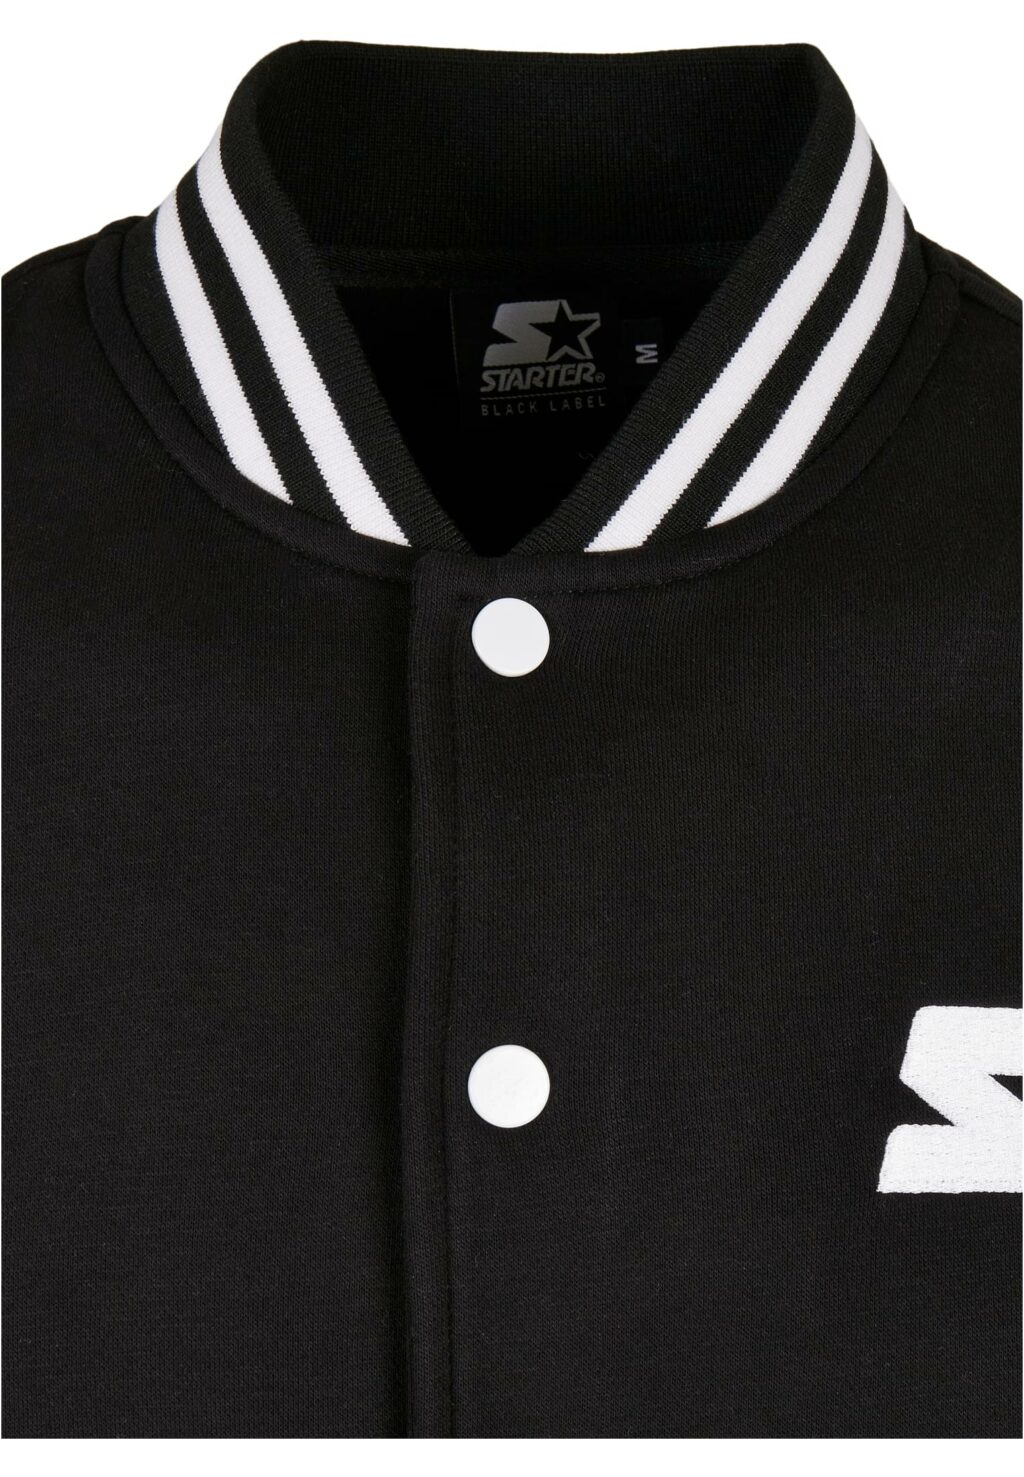 Starter College Fleece Jacket black/white ST107